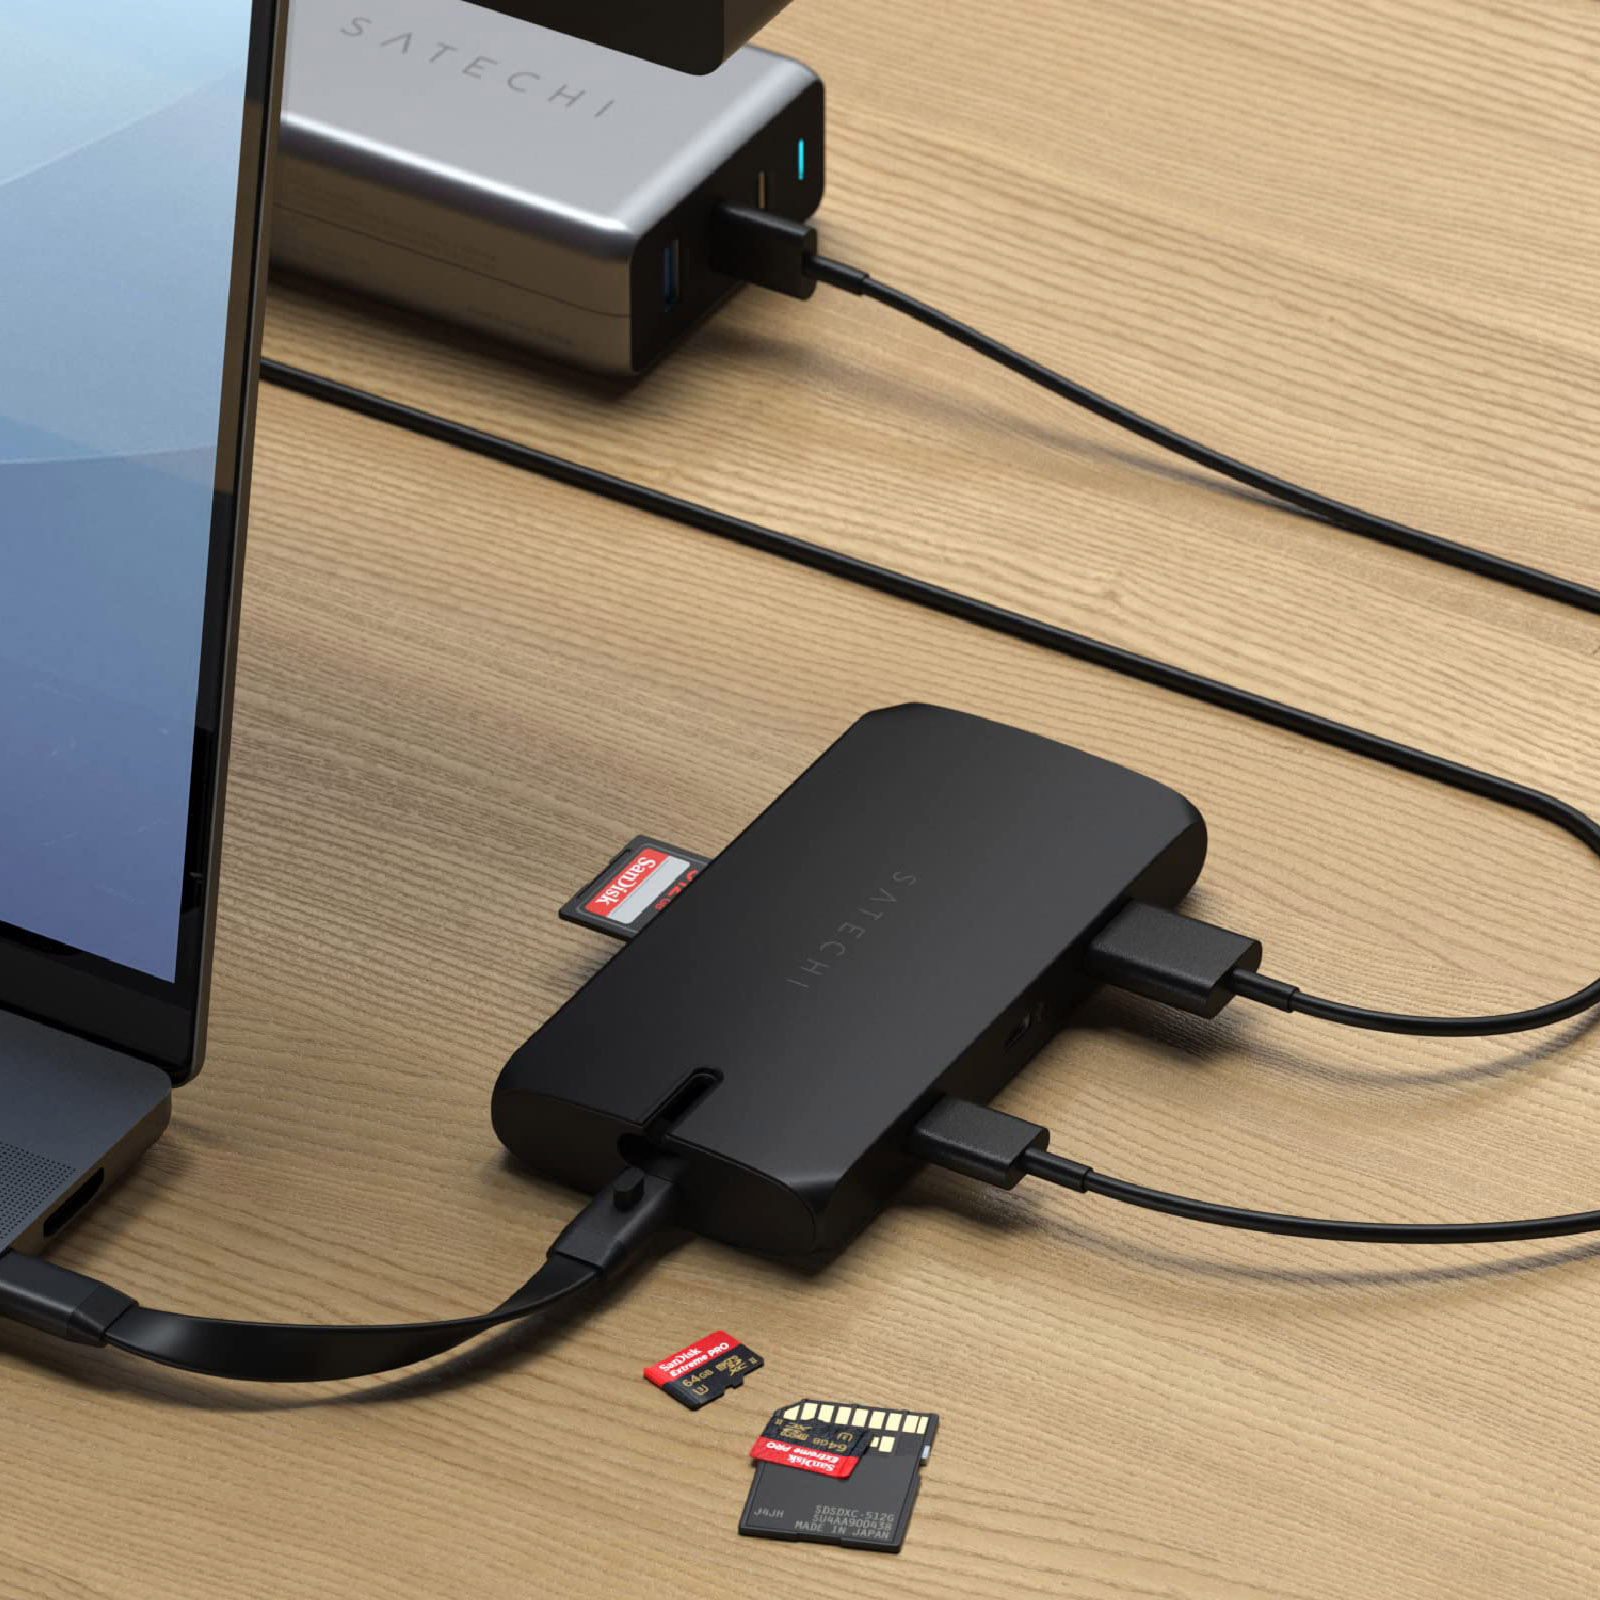 Hub USB C vers HDMI 4K, VGA, Ethernet, 2 USB + 2 USB C, Lecteur carte,  Satechi - Noir - Français